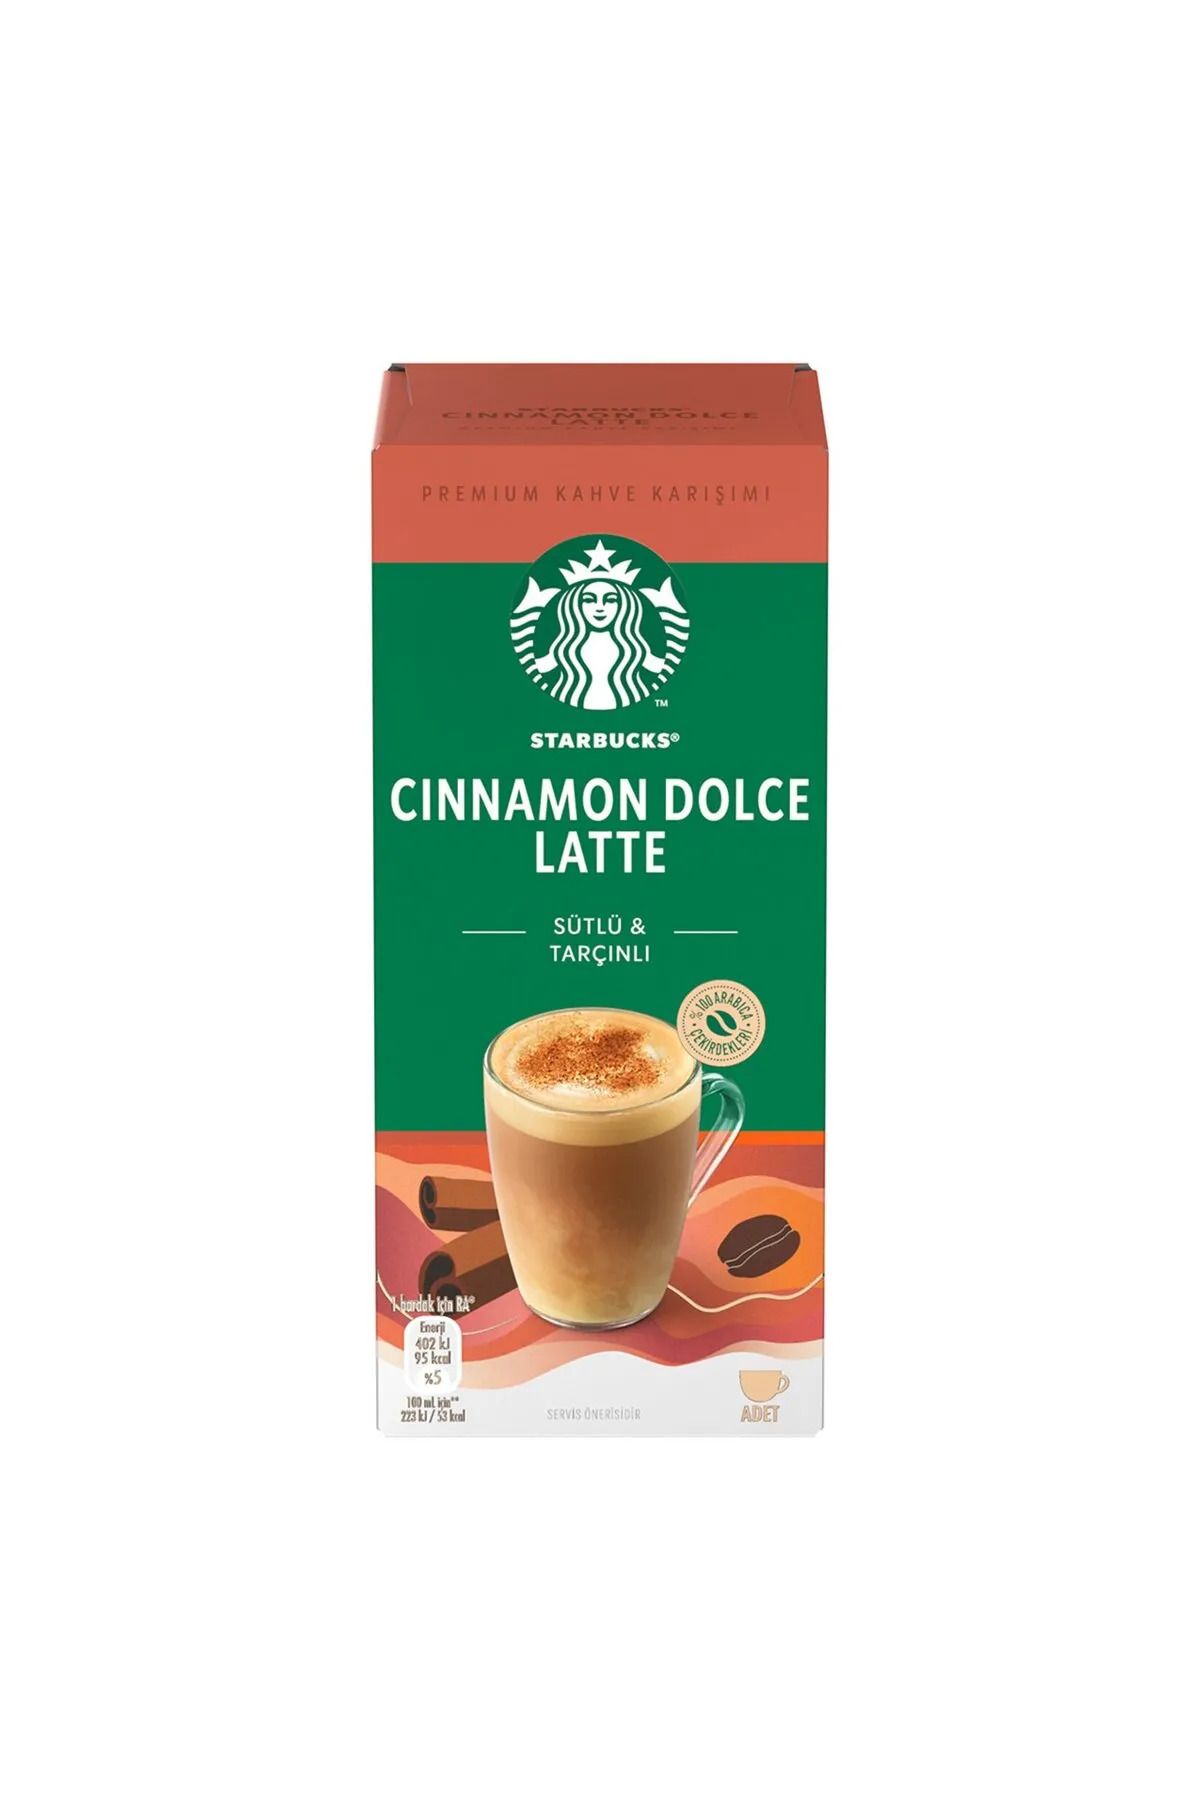 Starbucks Cinnamon Dolce Latte Kahve Karışımı Sütlü Tarçınlı 4 x 23 Gr x 2 Adet